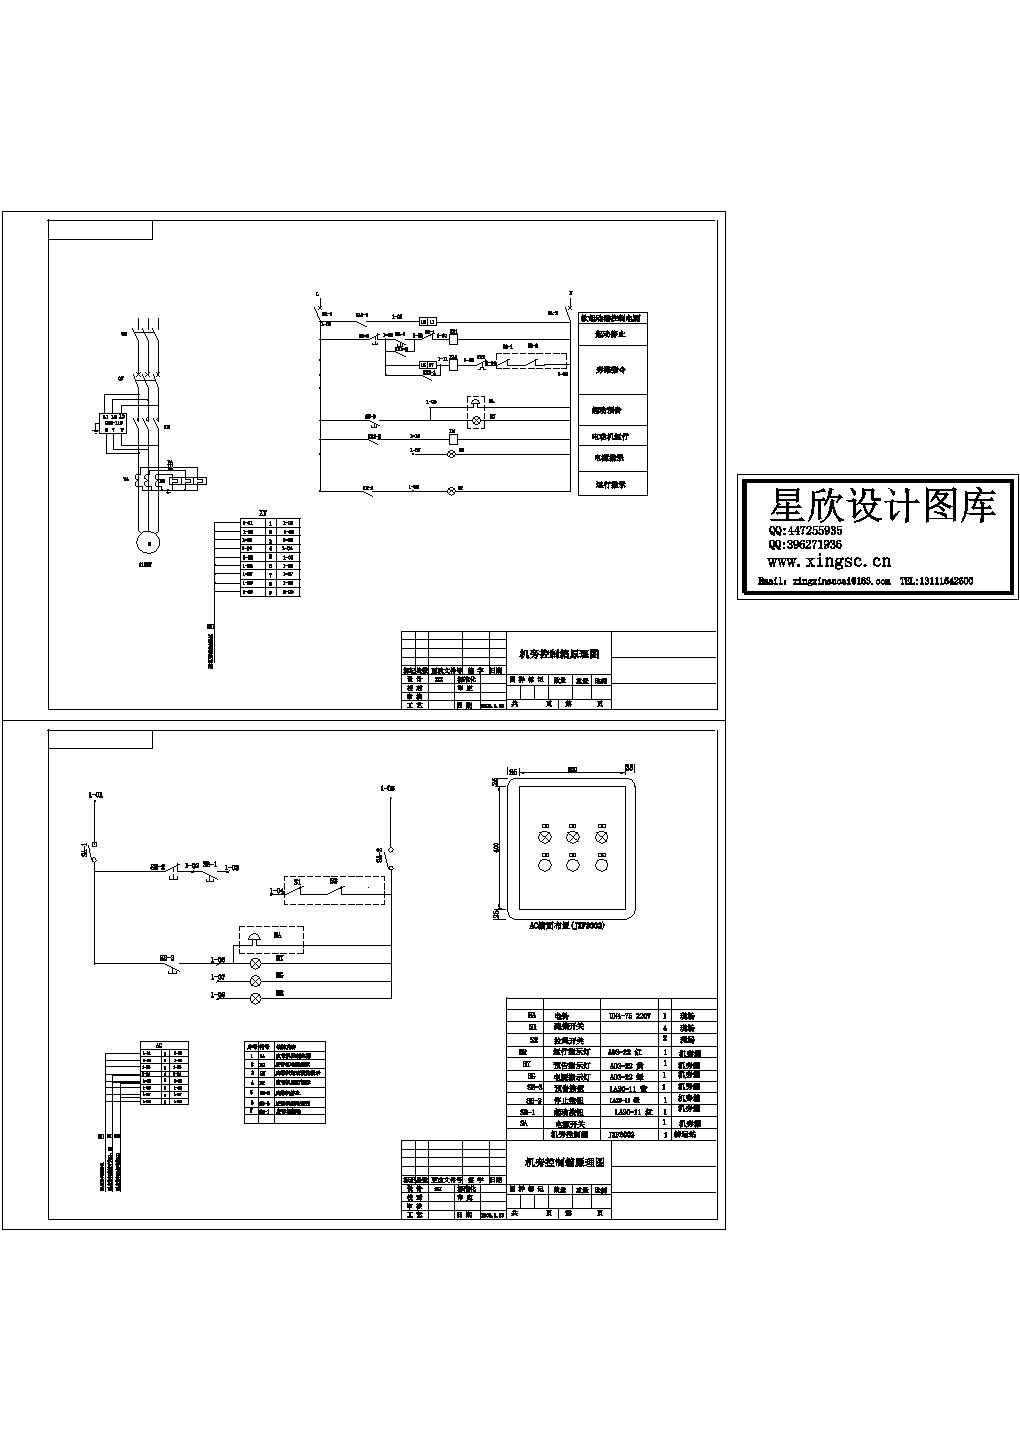 某标准型号机旁控制箱电气自动控制原理设计CAD图纸